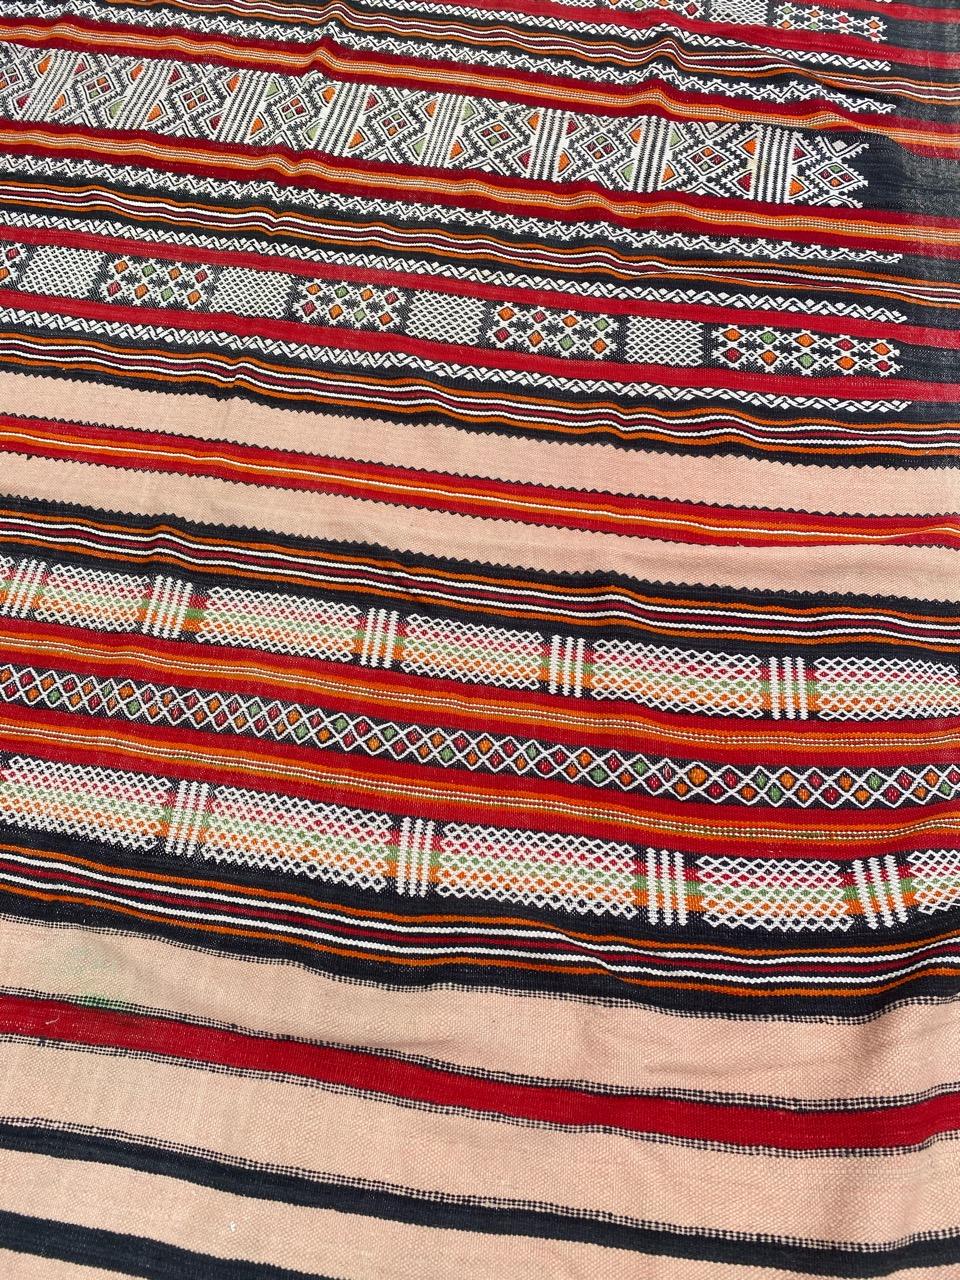 Joli Kilim marocain du milieu du siècle avec de beaux motifs géométriques et tribaux et de belles couleurs, entièrement tissé à la main avec de la laine sur une base de laine.

✨✨✨
